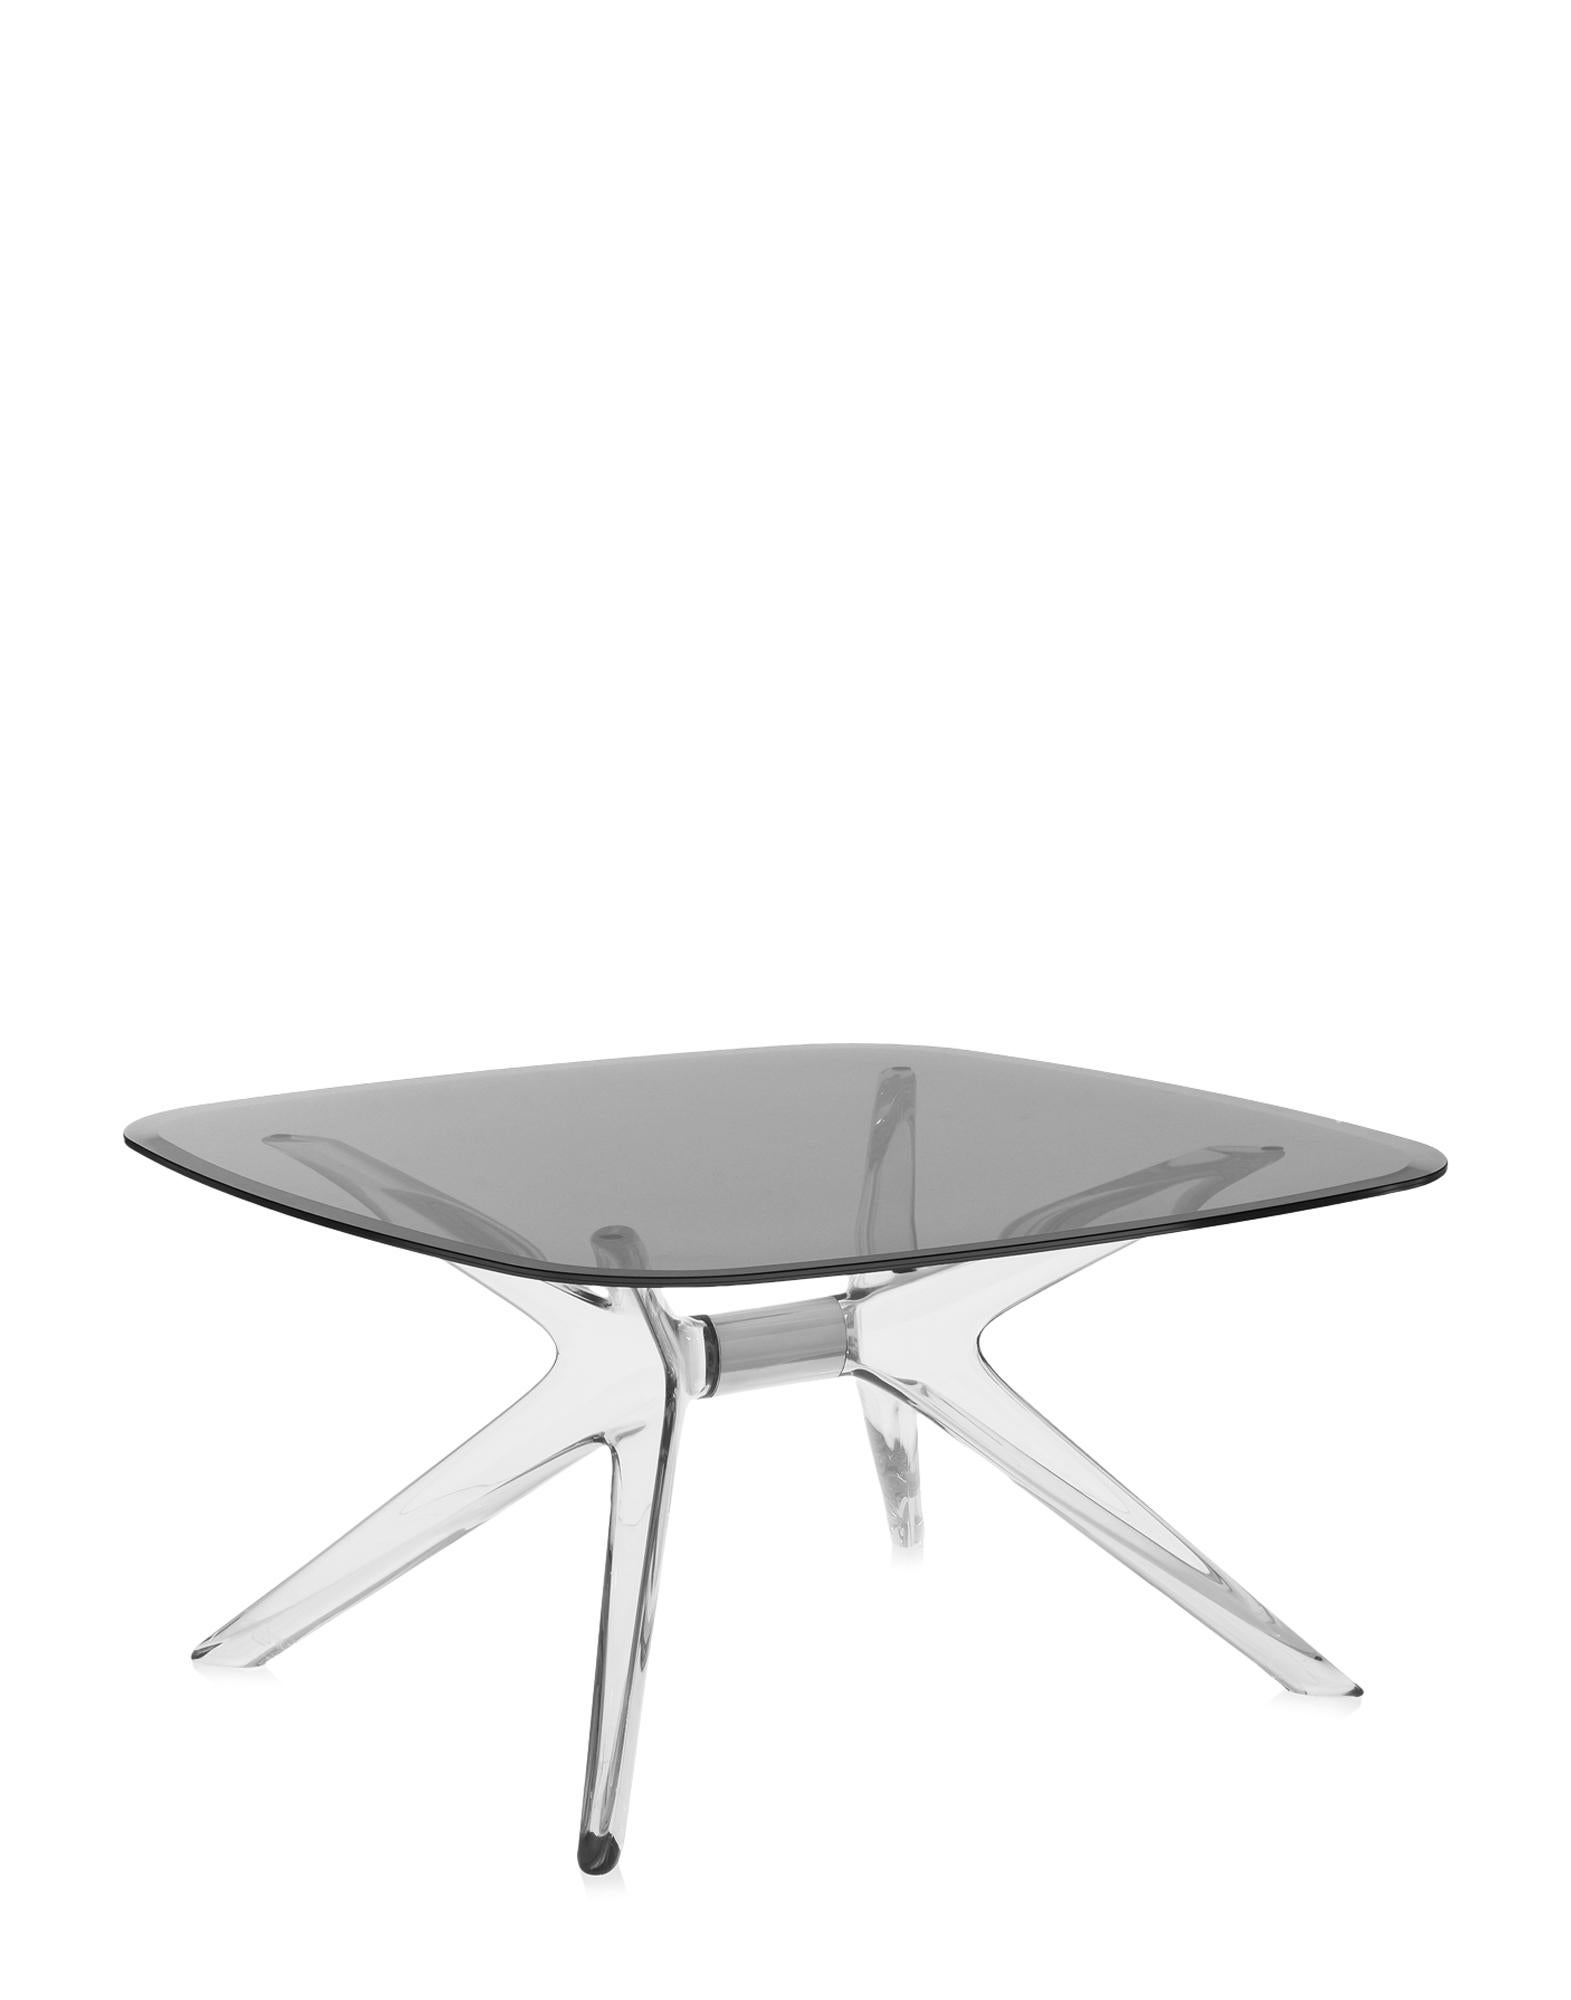 Kartell lifestyle enrichit le salon avec Blast de Philippe Starck, une table basse carrée aux angles arrondis et aux bases et plateaux transparents. Le design est une évolution de la table Sir Gio. Le noyau central de la base est